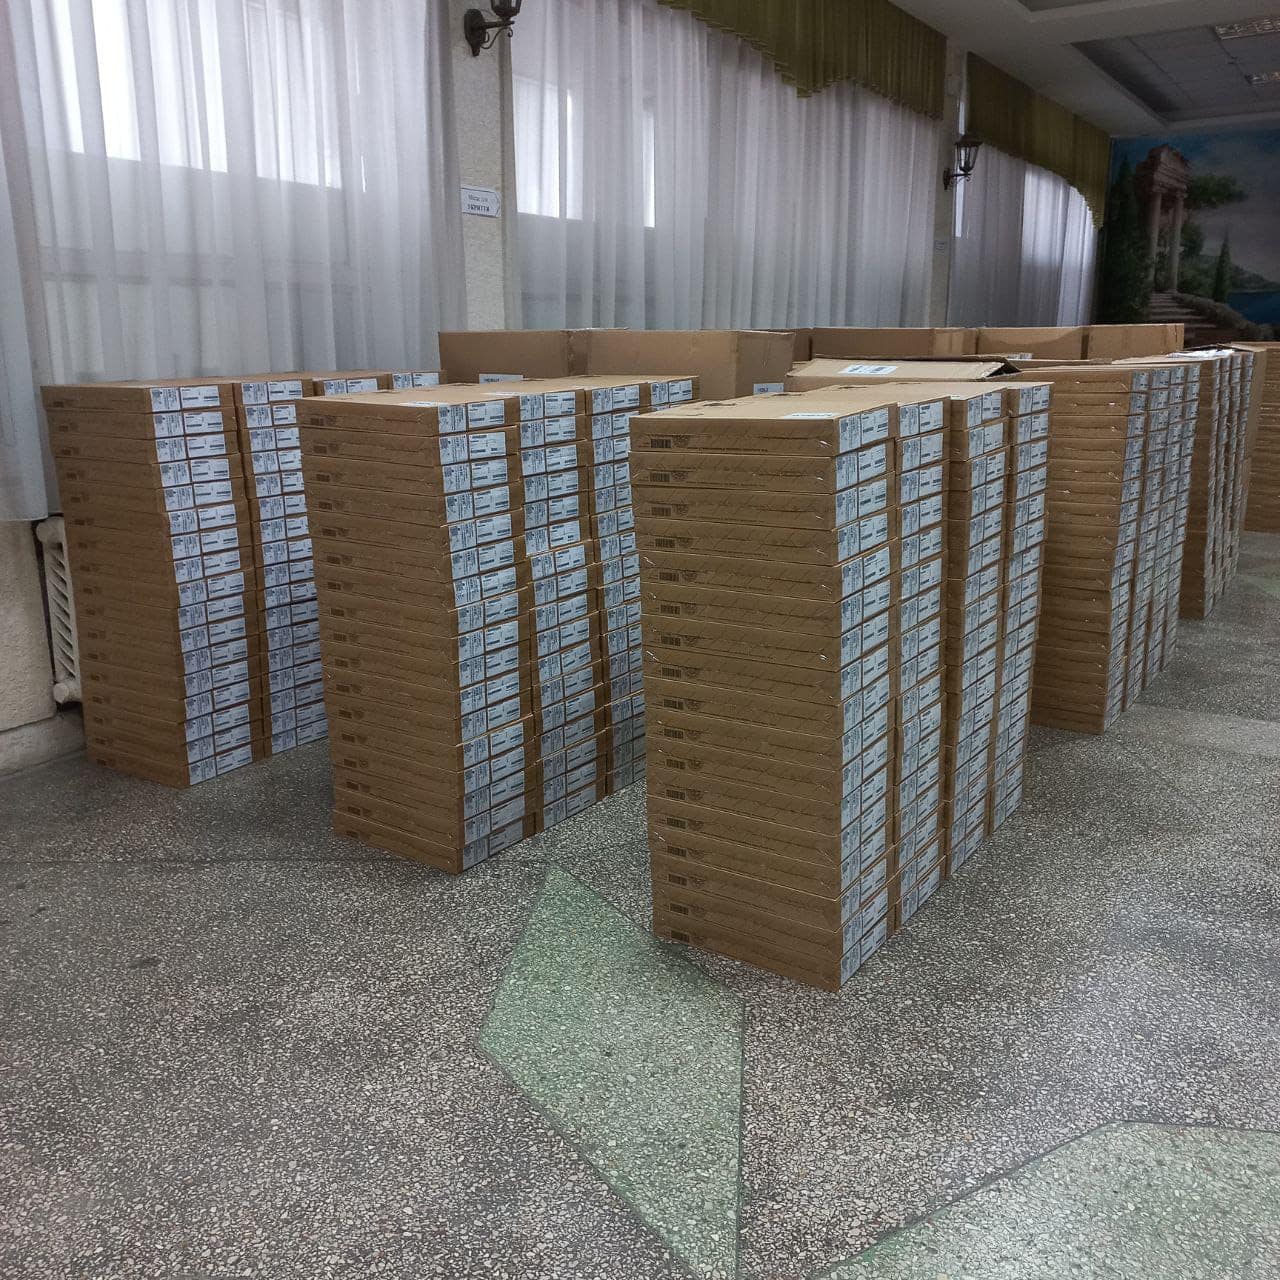 Більше тисячі школярів з Одеської області отримають ноутбуки для навчання